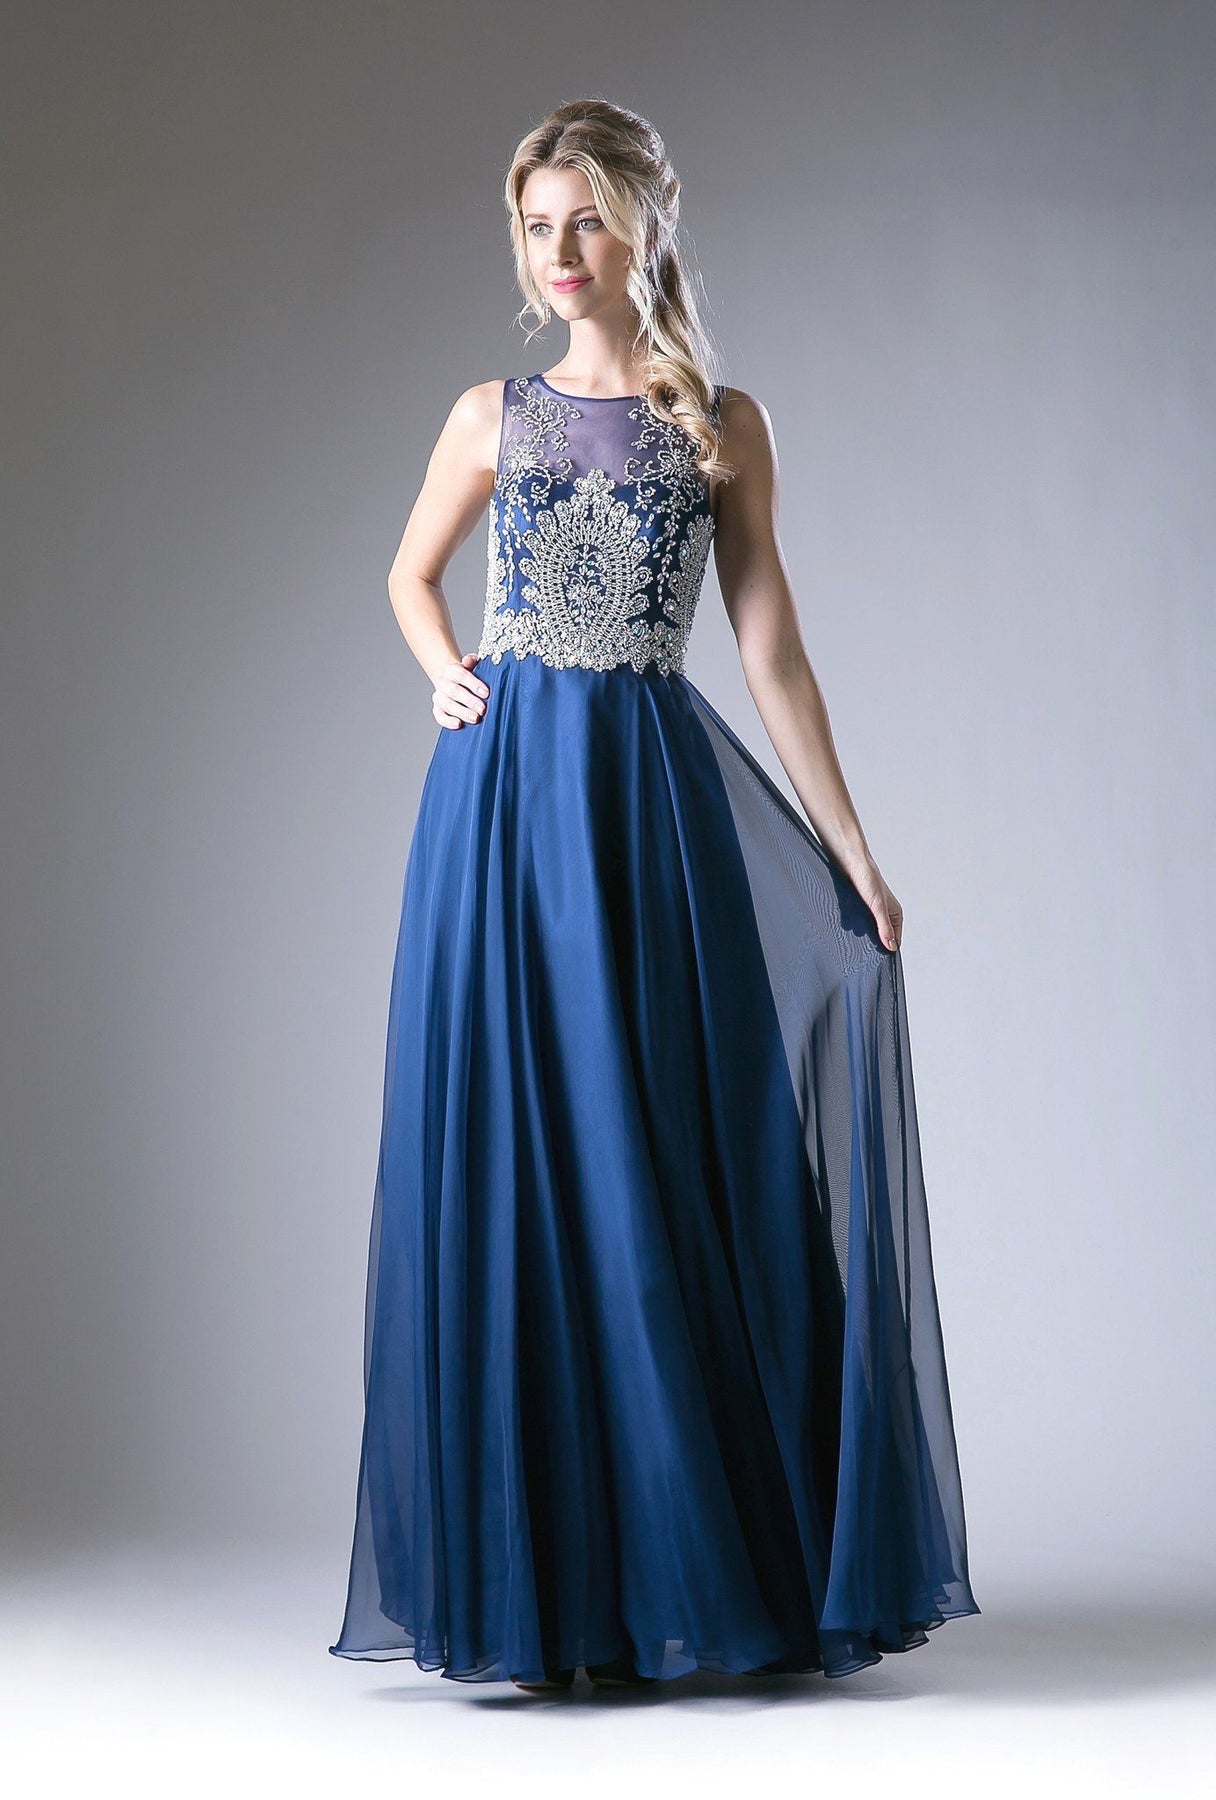 Long Lace Applique Illusion Dress by Cinderella Divine 56 – ABC Fashion